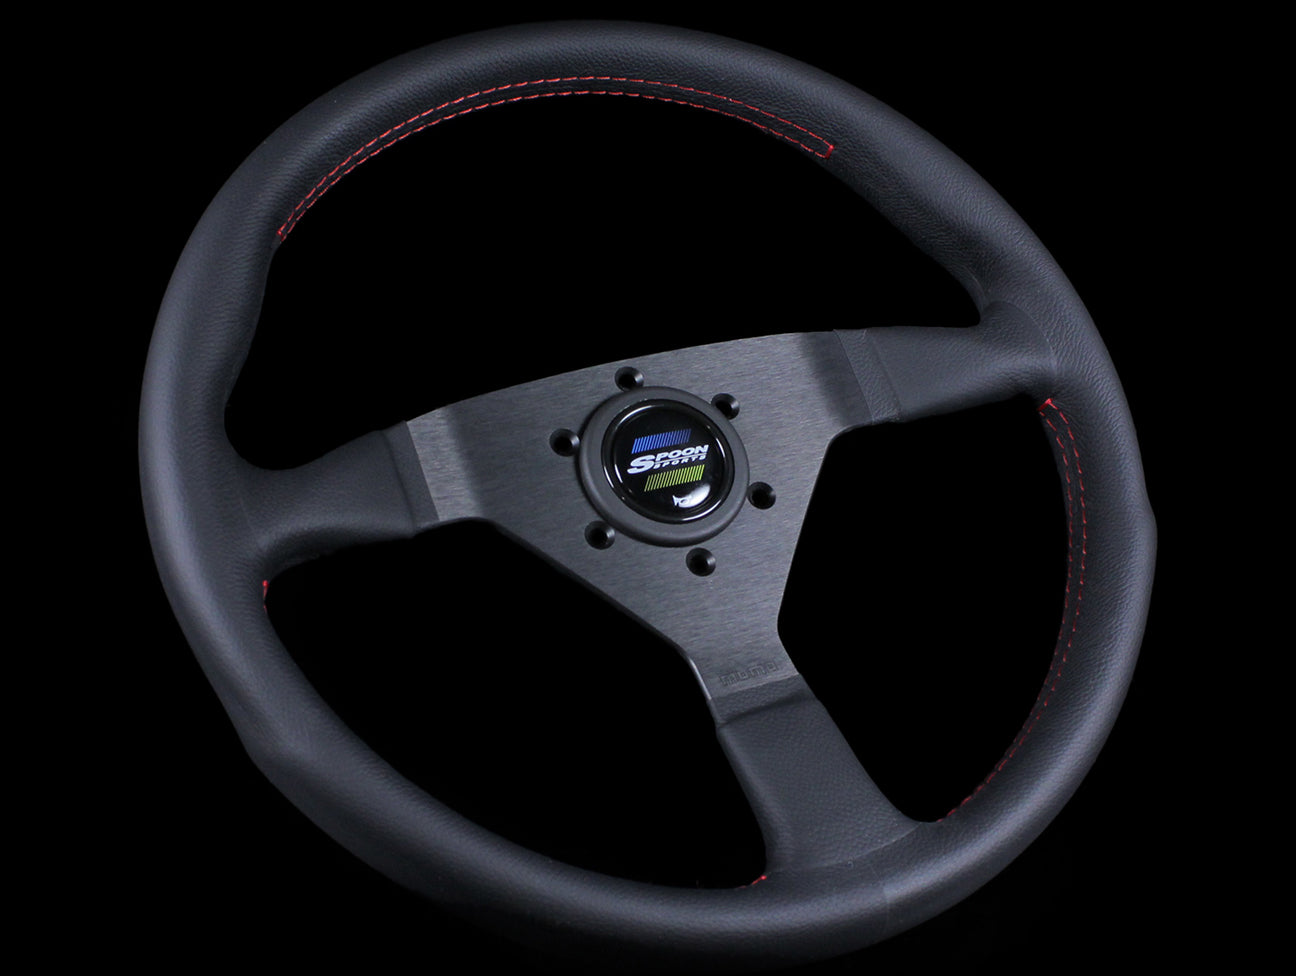 Spoon Sports Race 340mm Steering Wheel